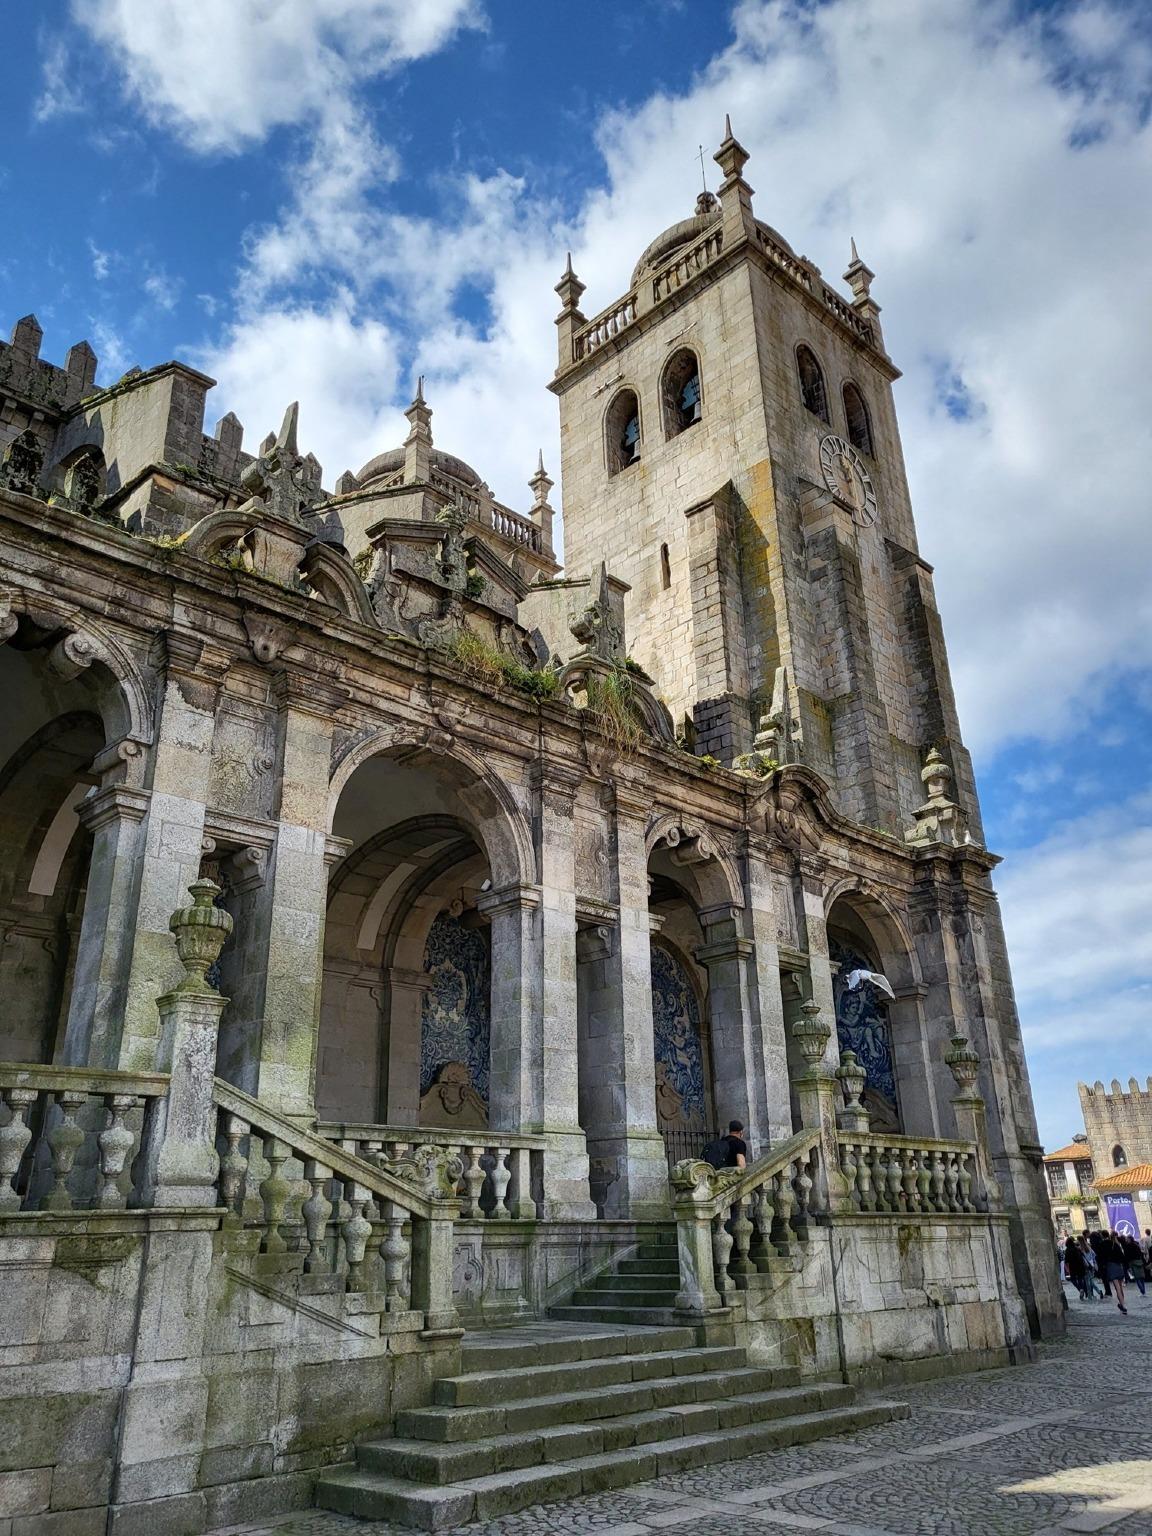 Maravíllese ante los intrincados detalles y la belleza atemporal de la Catedral de Oporto